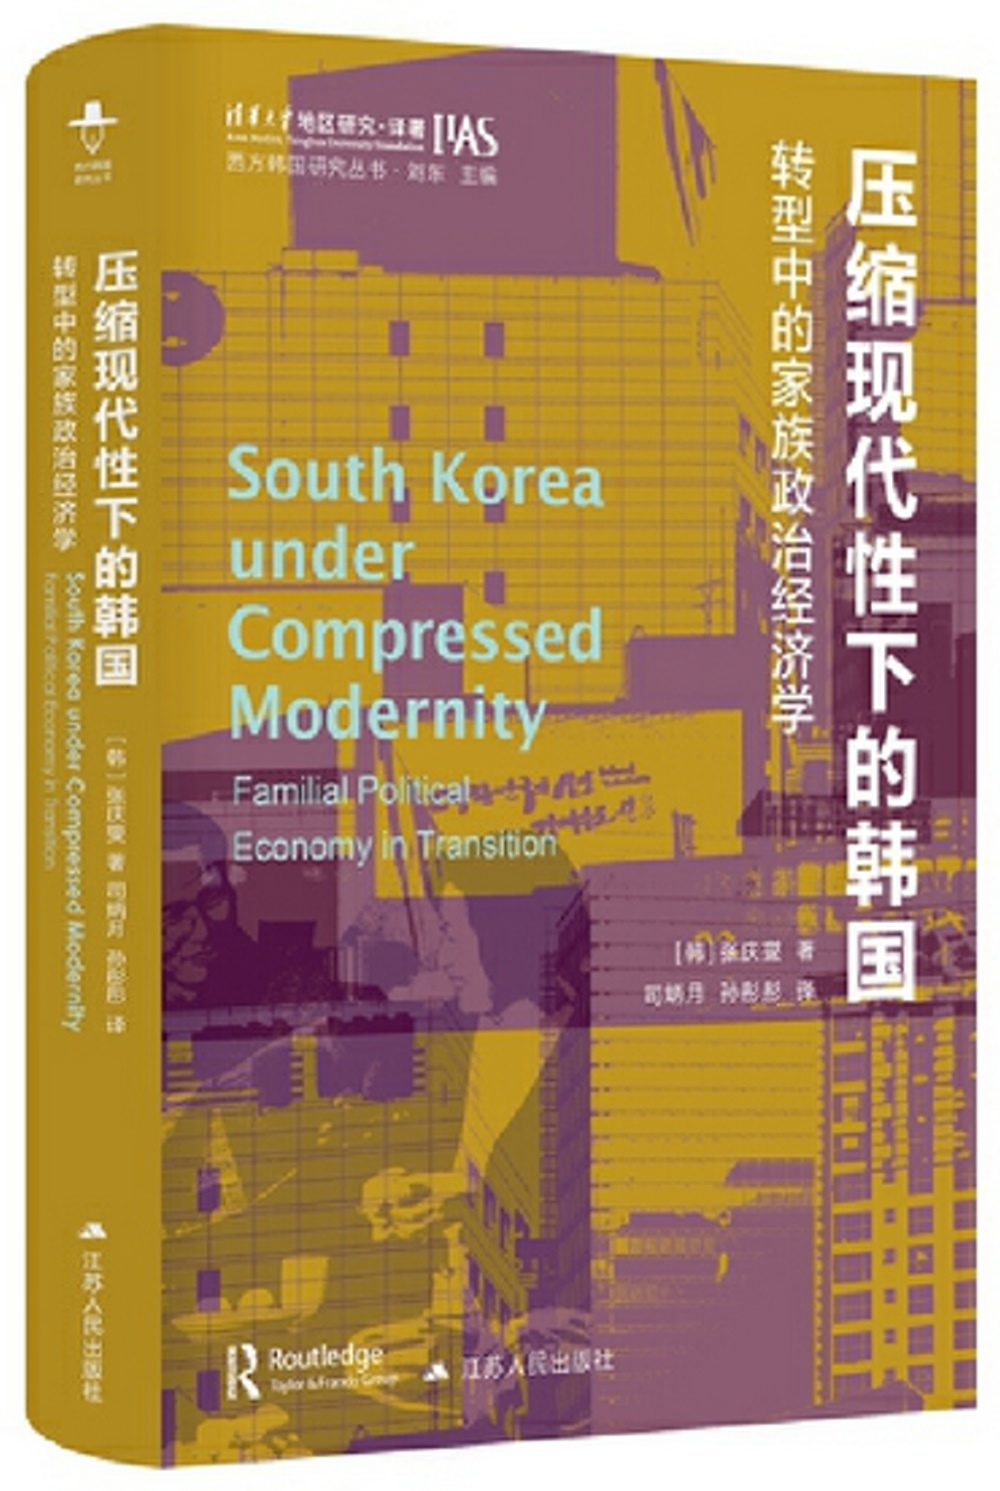 壓縮現代性下的韓國：轉型中的家族政治經濟學